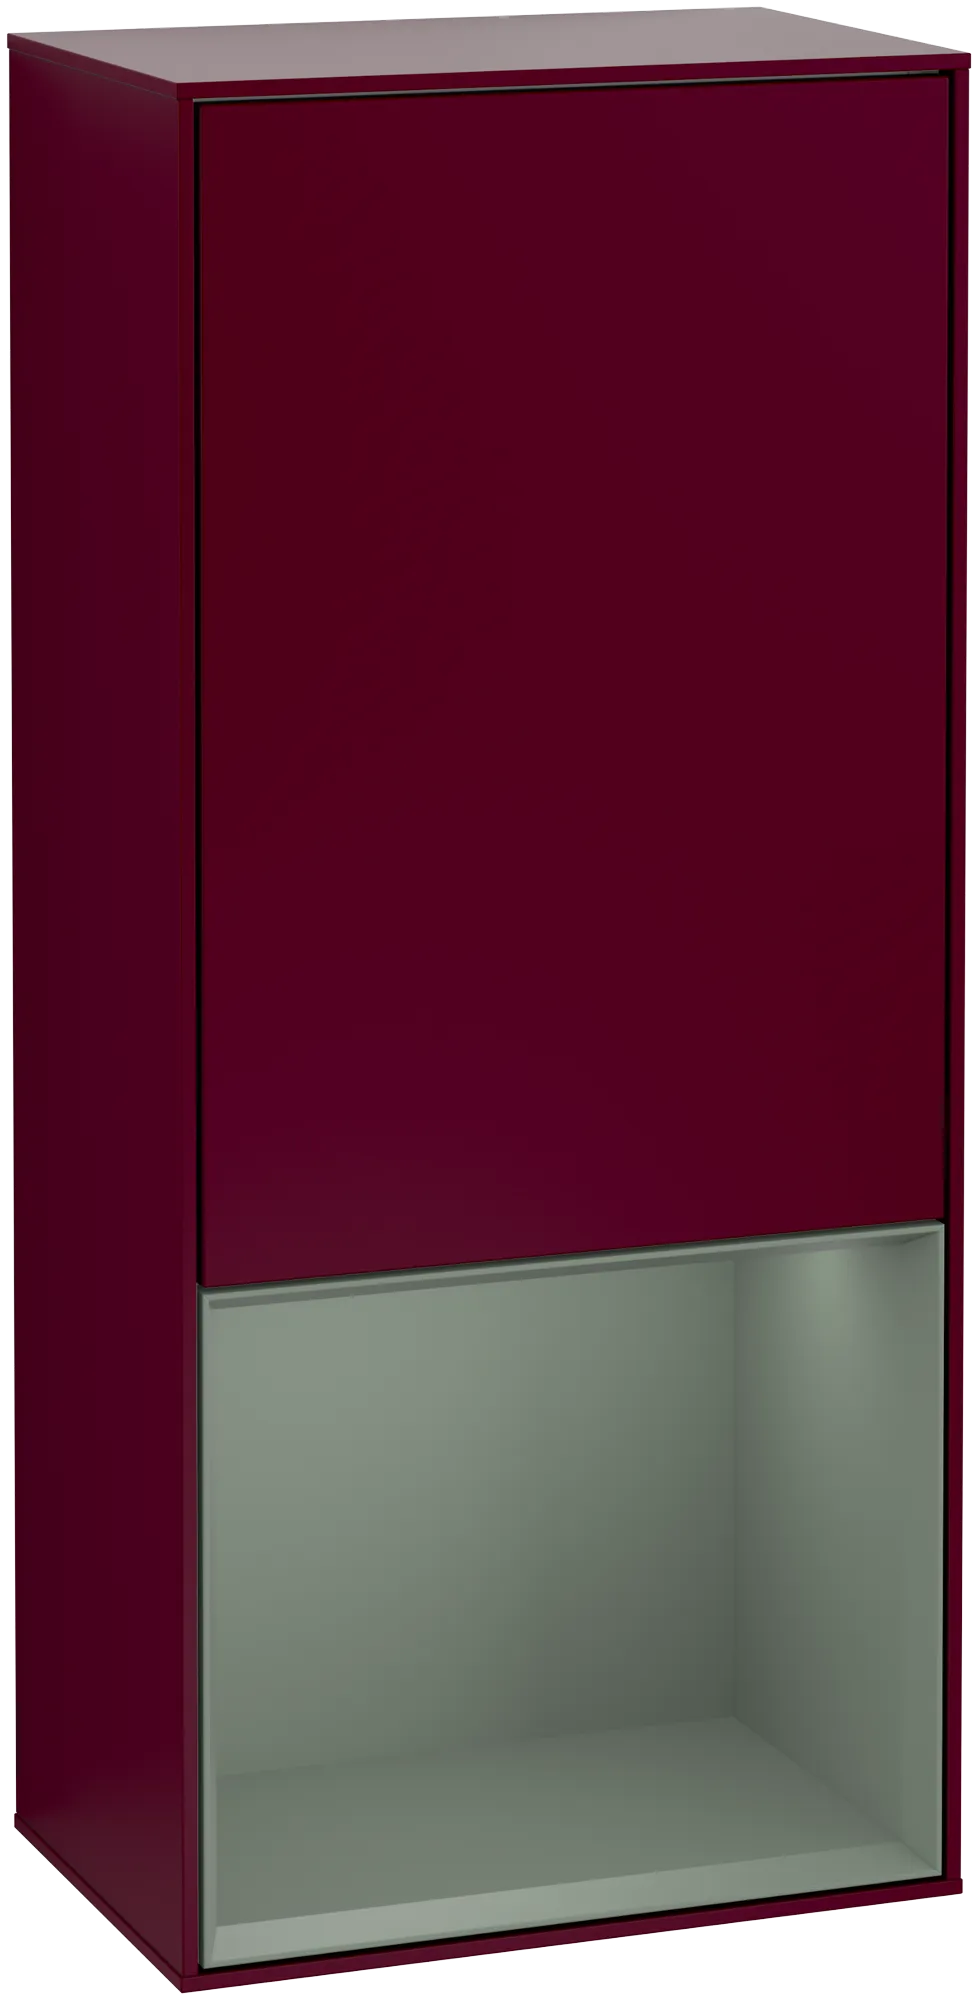 Bild von VILLEROY BOCH Finion Seitenschrank, mit Beleuchtung, 1 Tür, 418 x 936 x 270 mm, Peony Matt Lacquer / Olive Matt Lacquer #G550GMHB